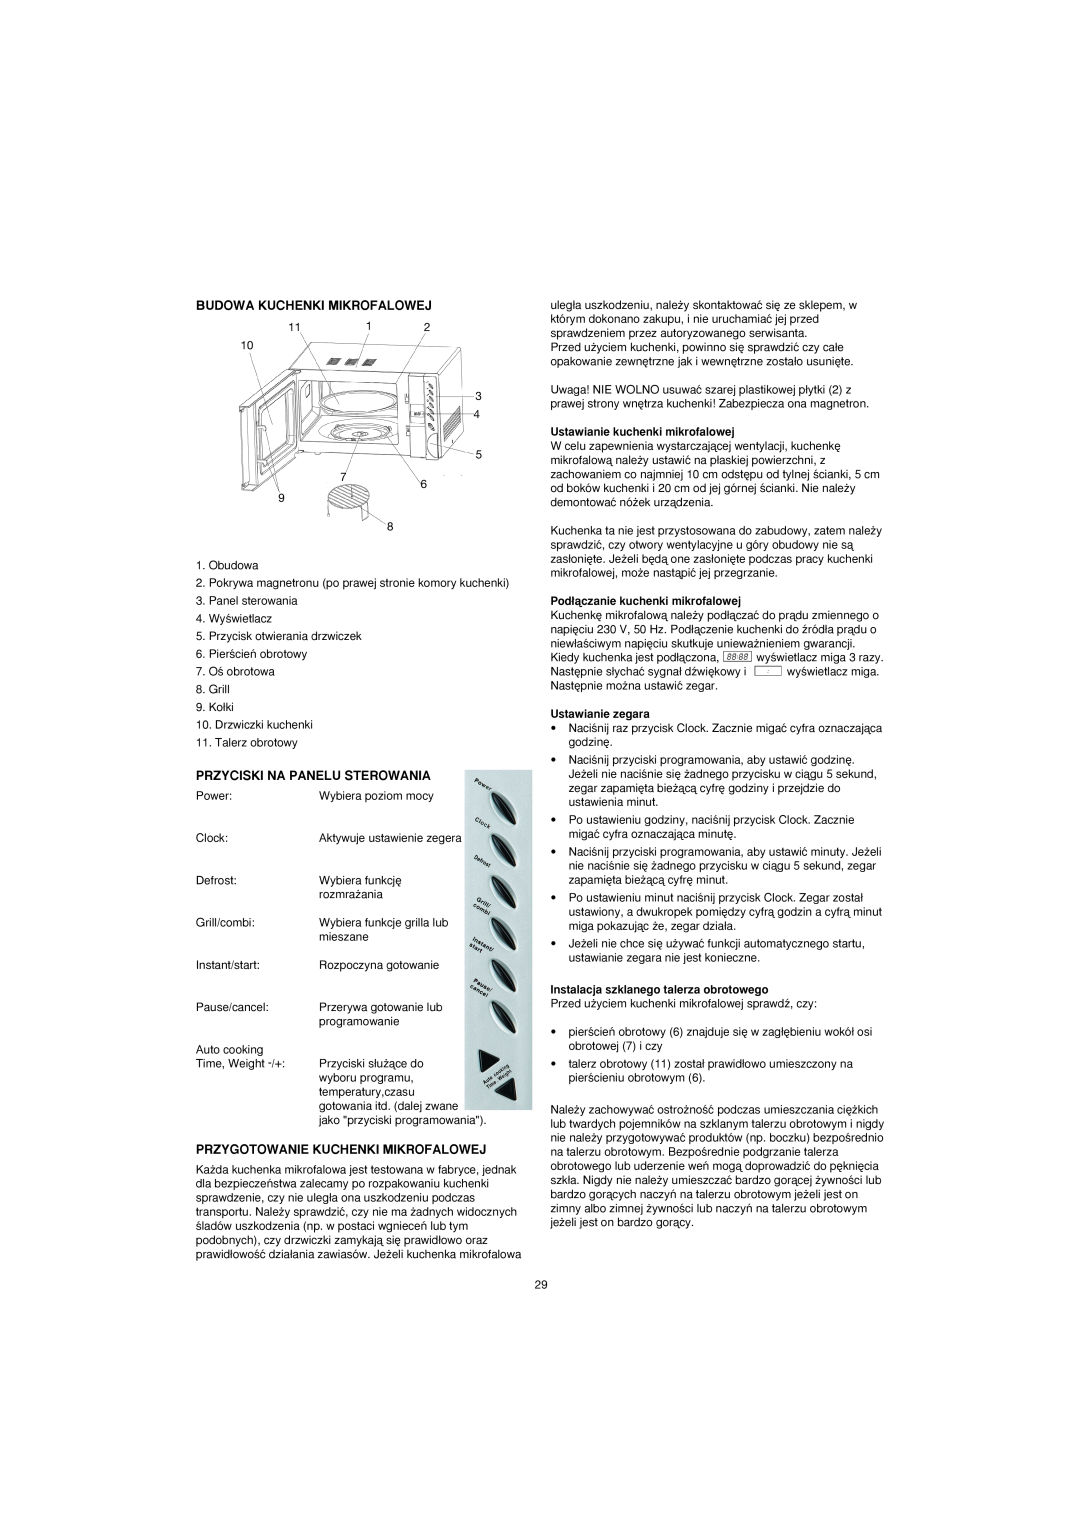 Ide Line 753-082 manual Budowa Kuchenki Mikrofalowej, Przyciski Na Panelu Sterowania, Przygotowanie Kuchenki Mikrofalowej 